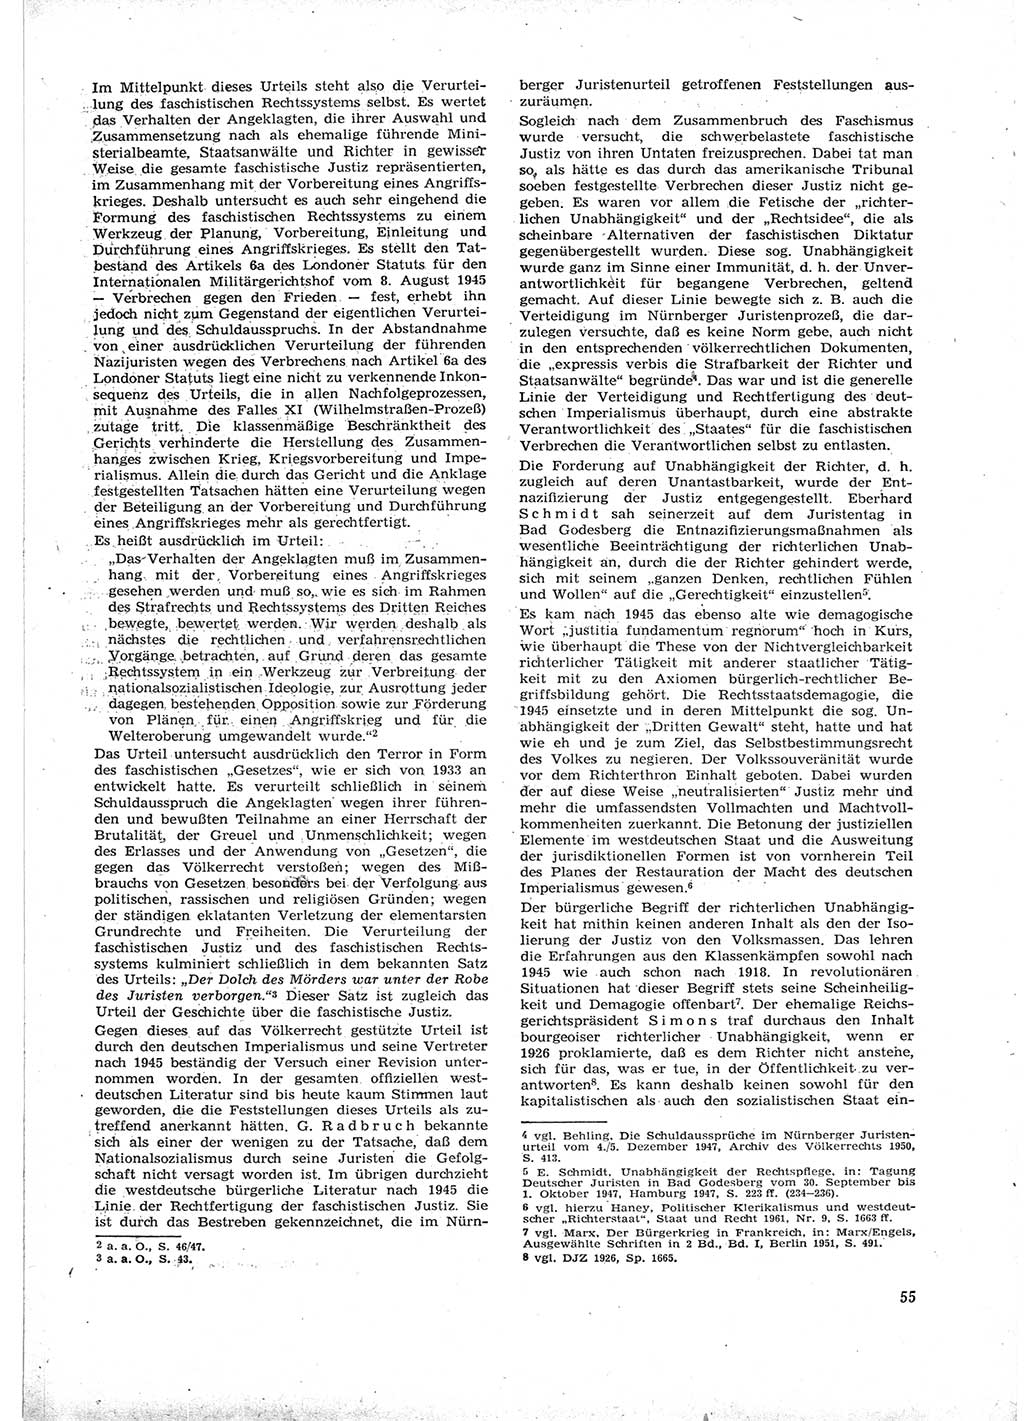 Neue Justiz (NJ), Zeitschrift für Recht und Rechtswissenschaft [Deutsche Demokratische Republik (DDR)], 16. Jahrgang 1962, Seite 55 (NJ DDR 1962, S. 55)